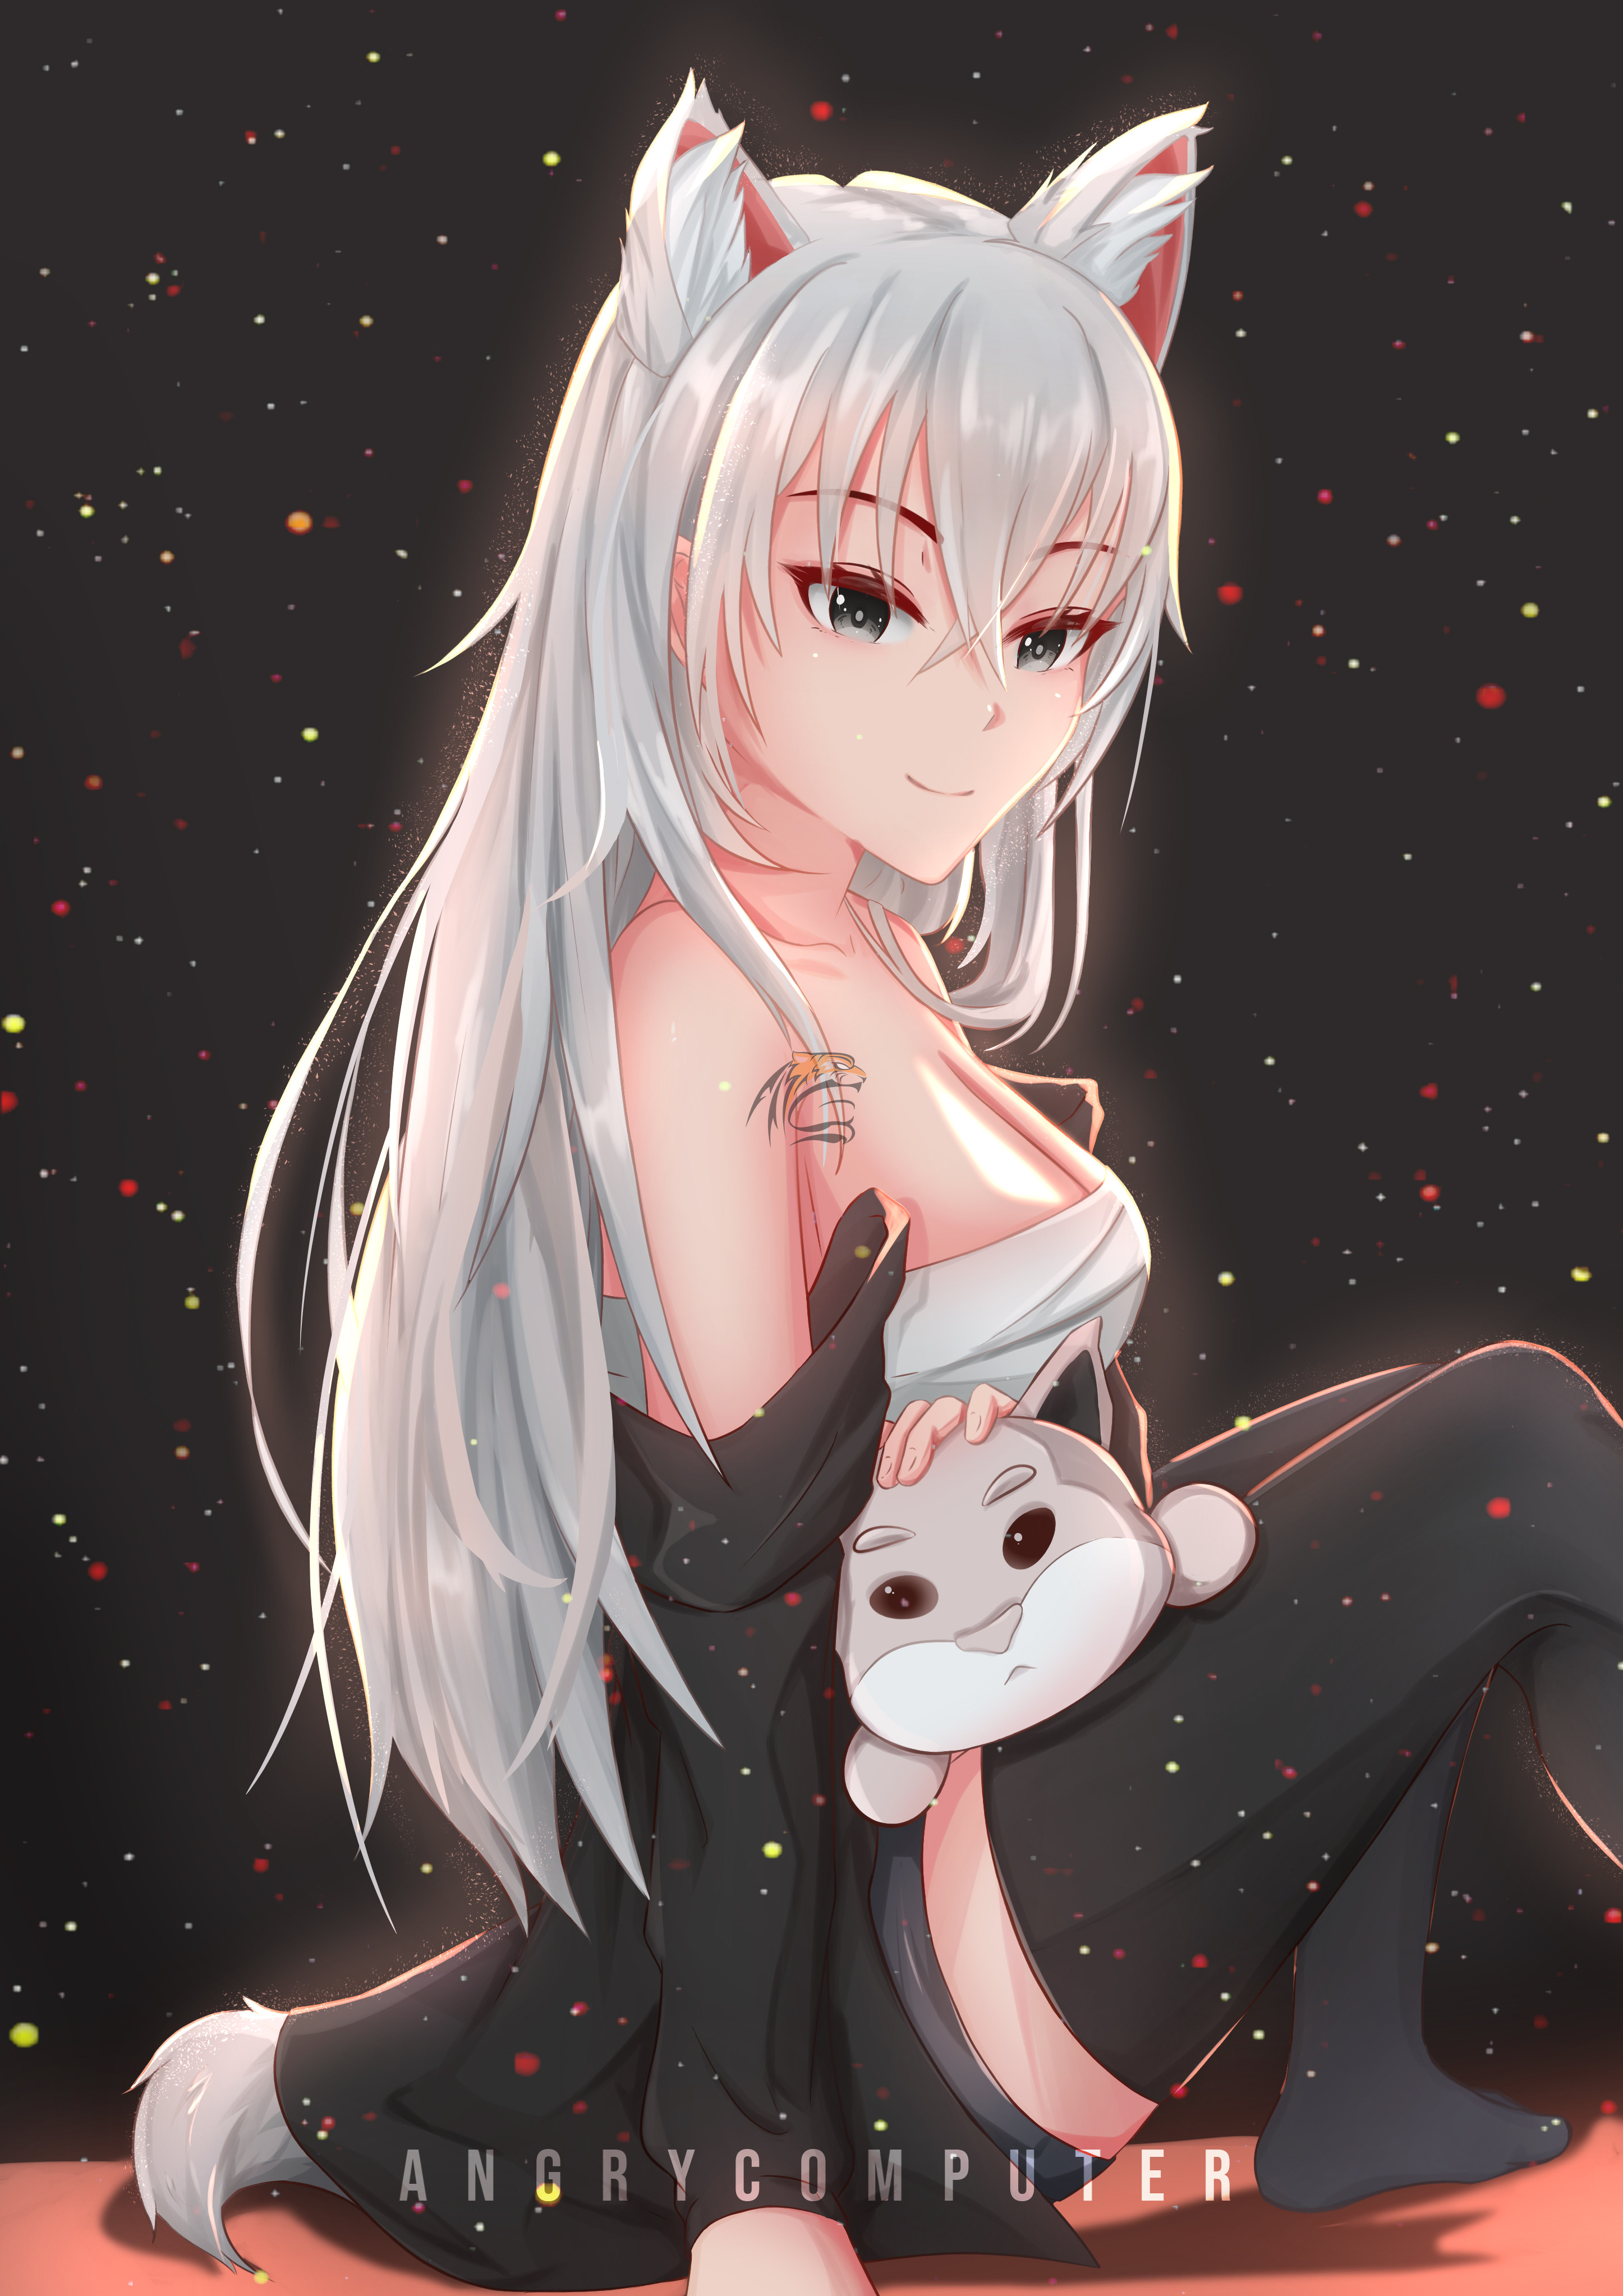 anime white kitsune girl